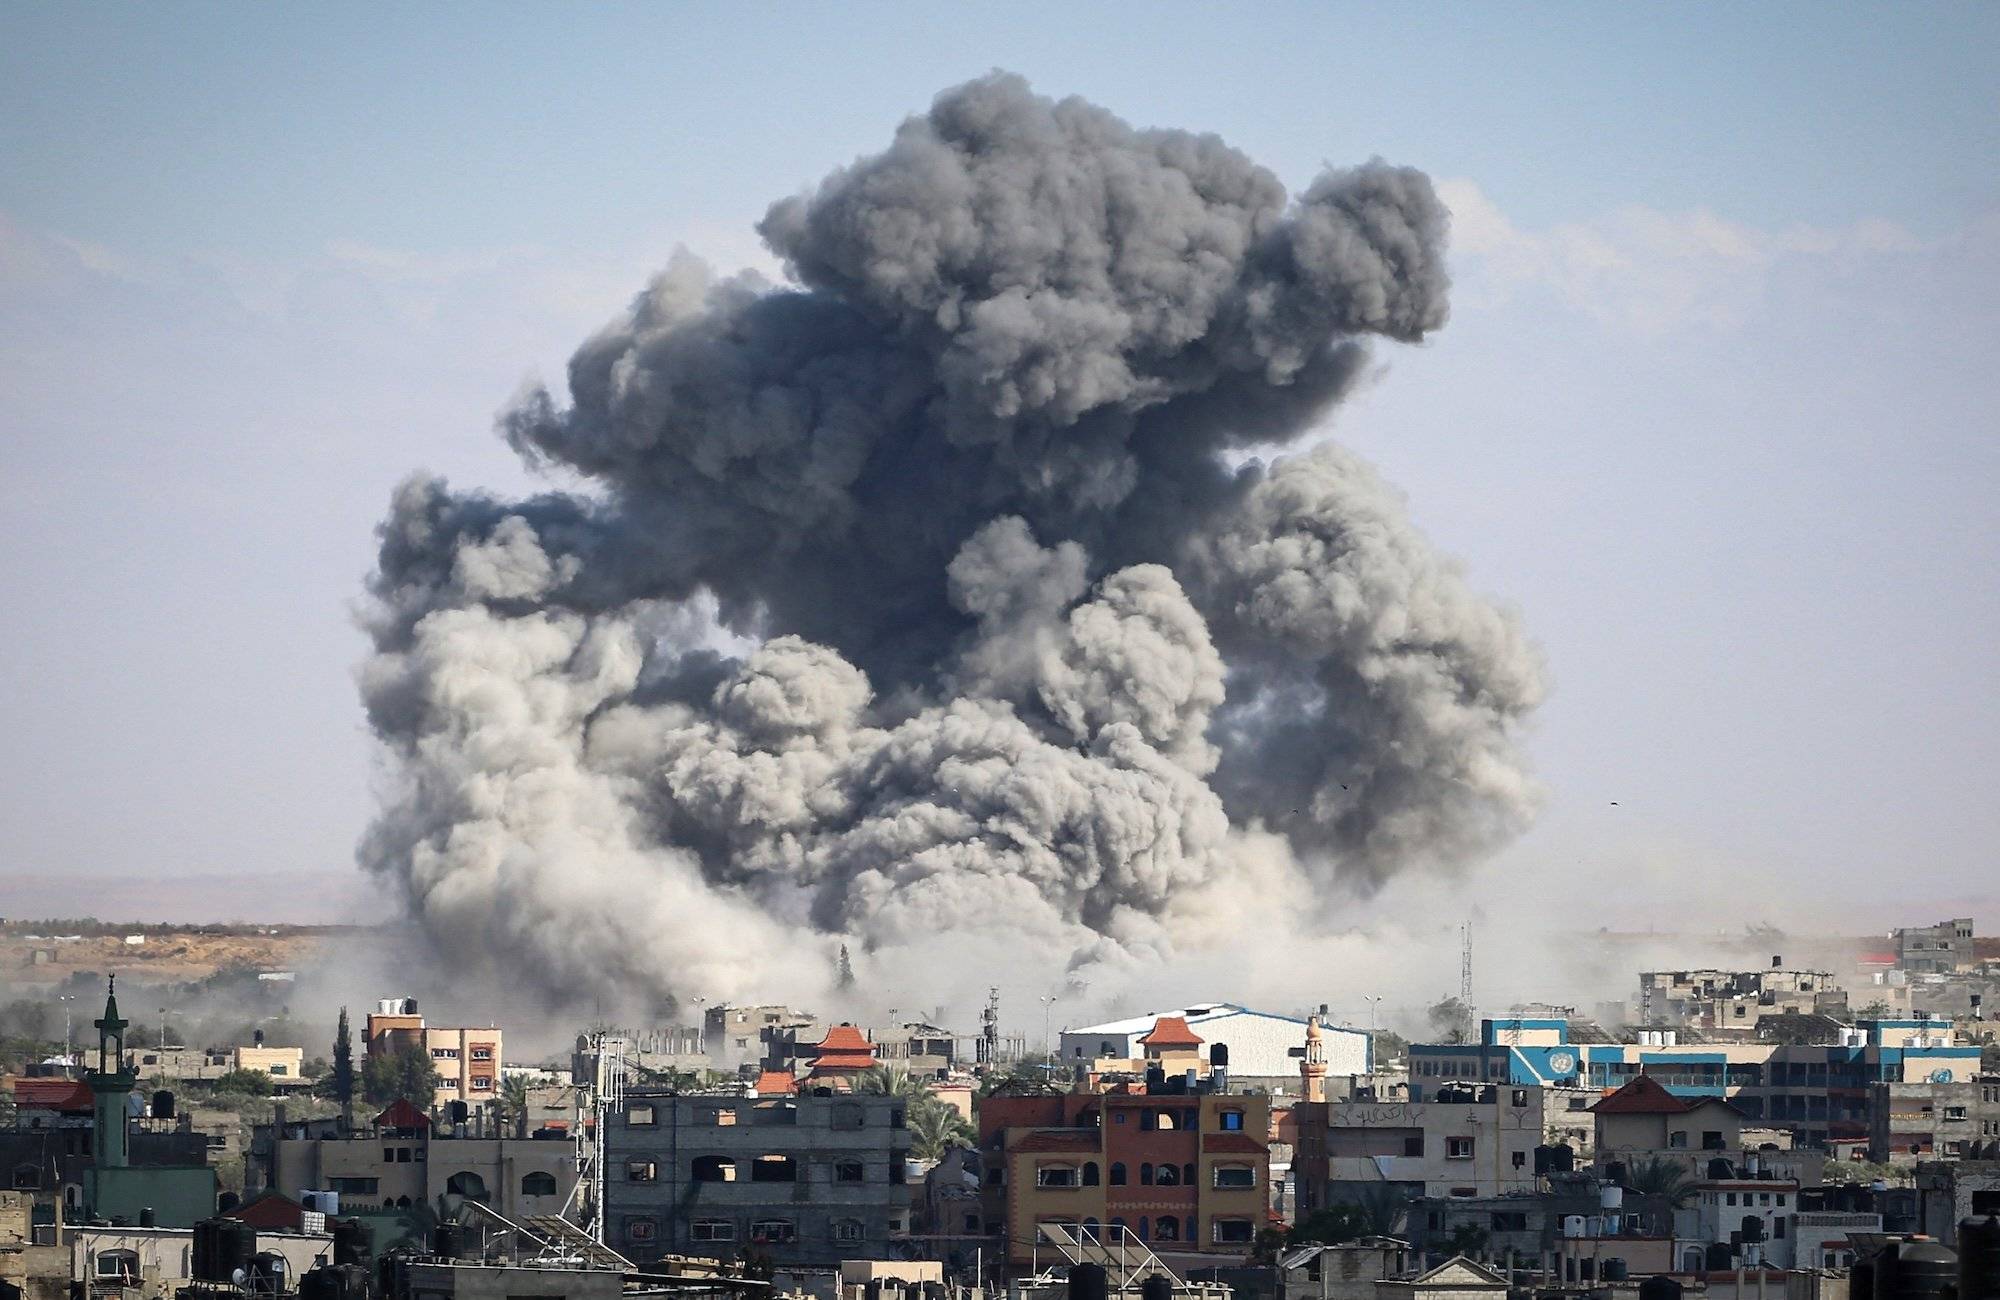 Ogromna chmura dymu unosi się nad palestyńskim miastem Rafah w Strefie Gazy. To efekt bombardowania tego miasta przez Izrael.